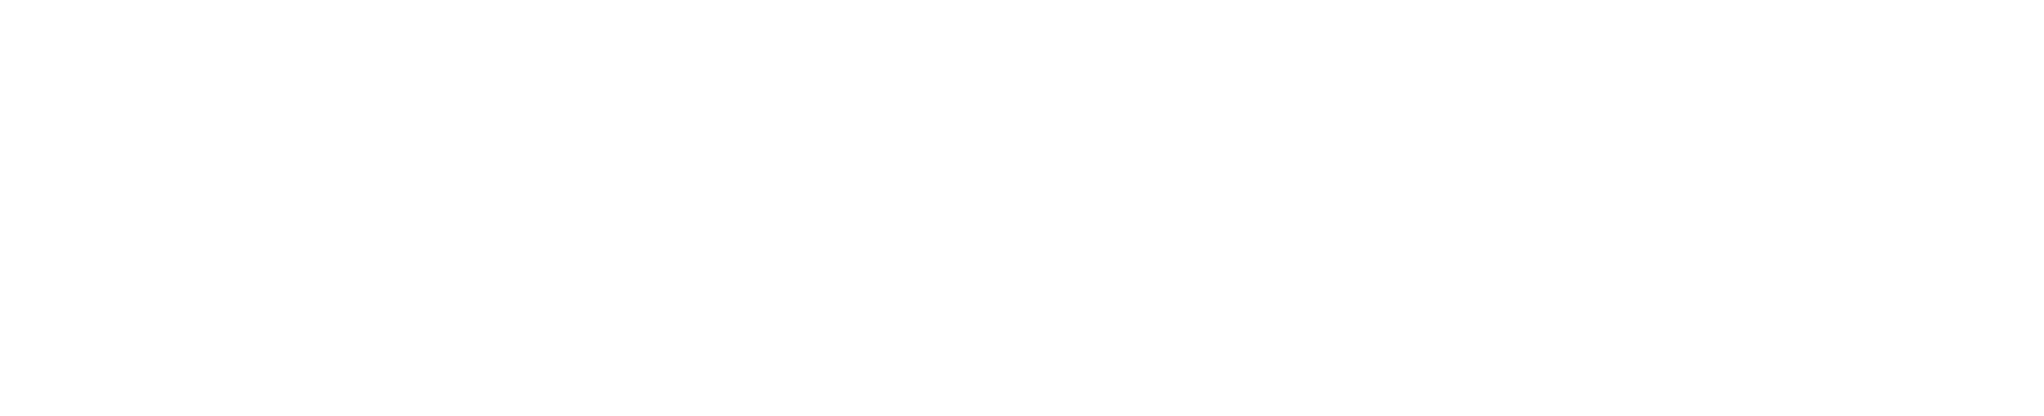 bozzuto construction logo